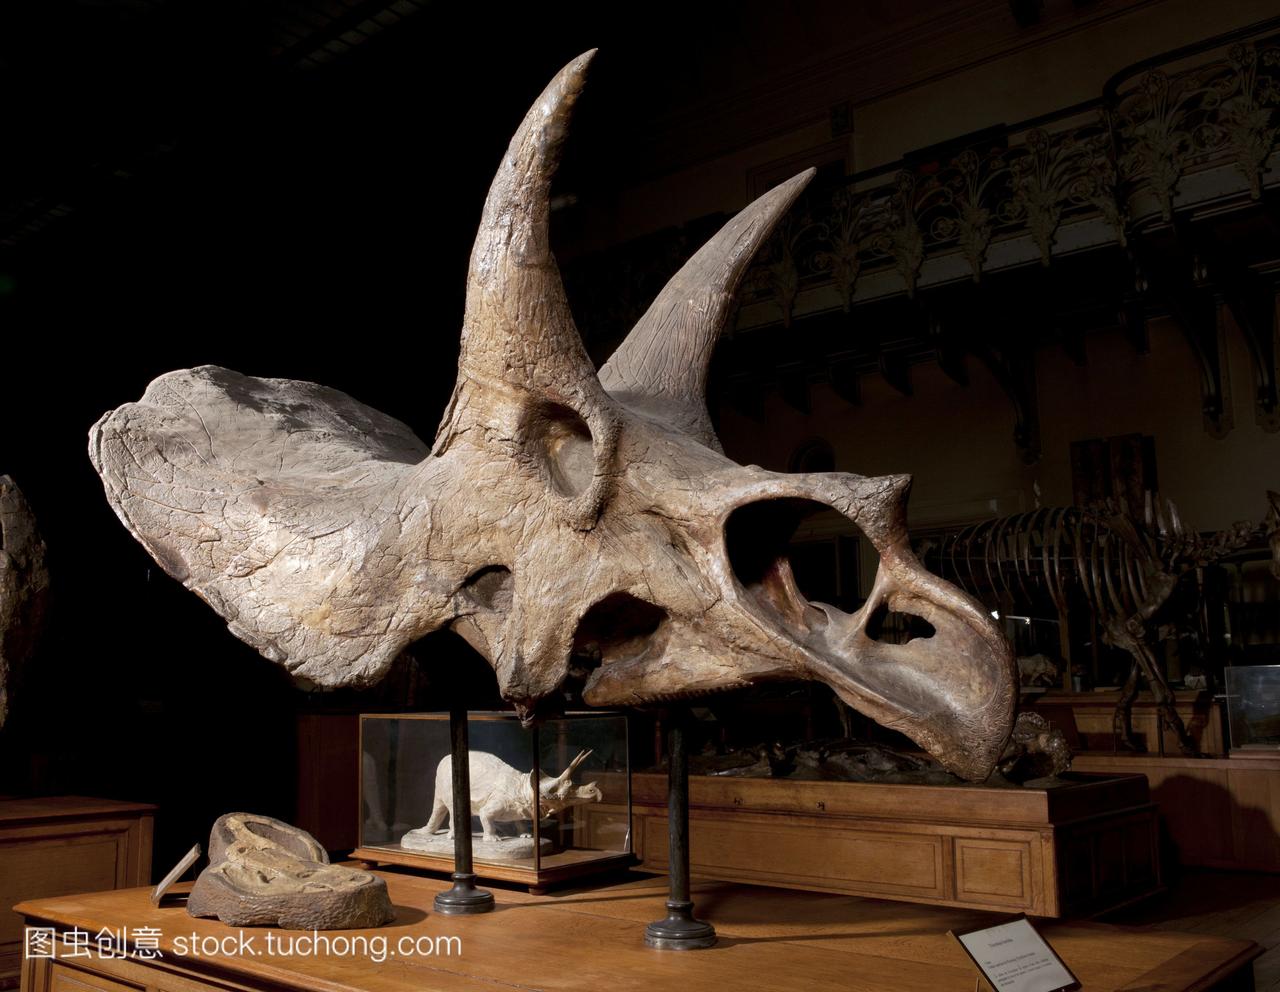 三角恐龙化石头骨。在美国怀俄明州发现的三角龙化石头骨的博物馆展示，距今七千万年前。三角龙是一种生活在白垩纪晚期的恐龙。它是一种食草恐龙，有独特的角和颈盾。它的长度可以达到9米，两个主要的角长达一米。一个小角出现在鼻子上。它可能用它的角和它的颈盾来防御或求爱和统治的表现。照片摄于2011年，在法国巴黎自然历史博物馆mnhn的古生物学画廊。